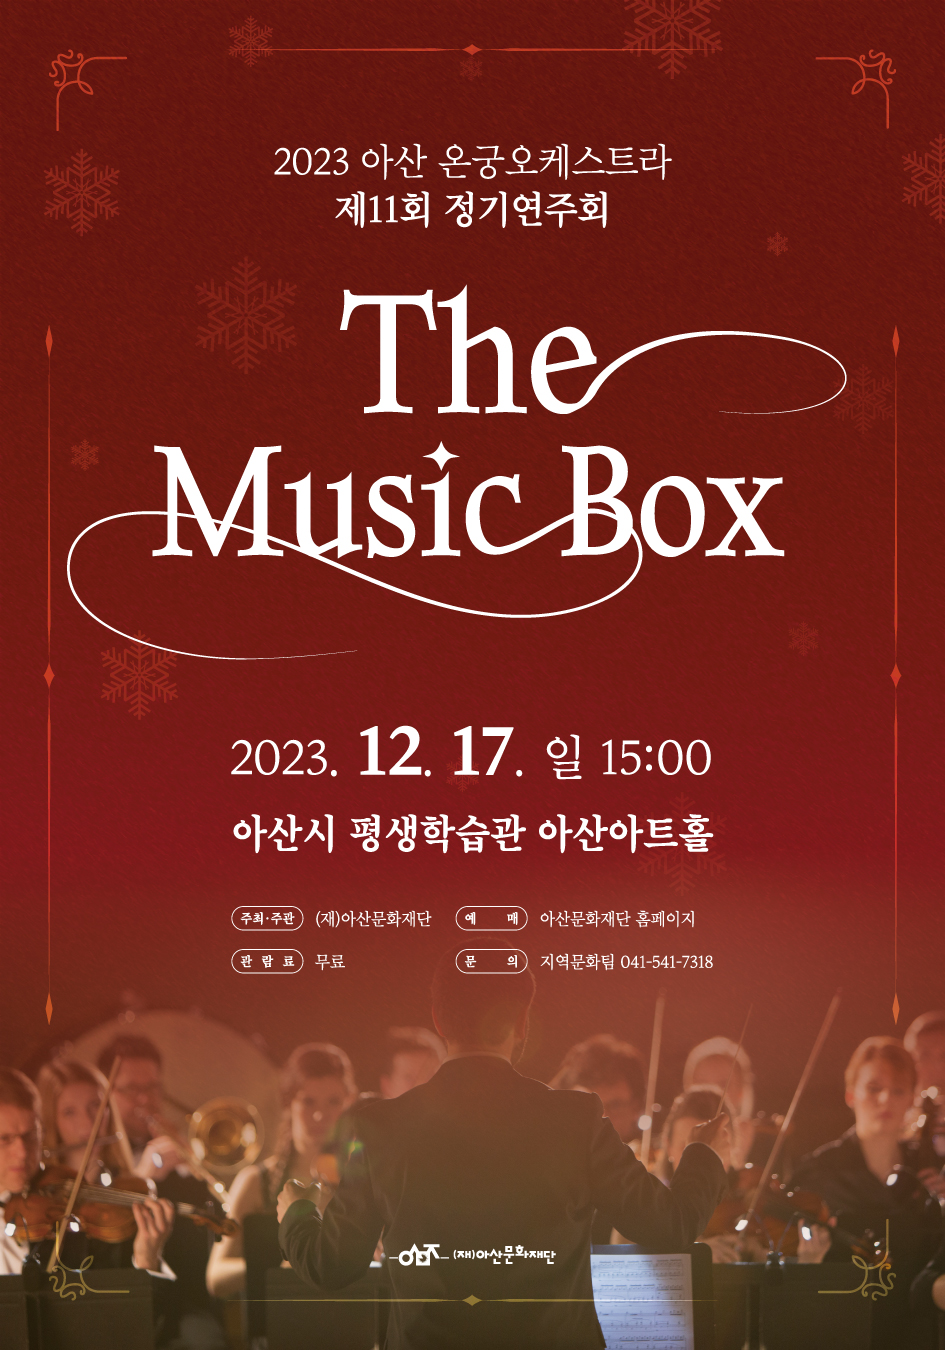 2023 아산 온궁오케스트라 제11회 정기연주회 ‘The Music Box’